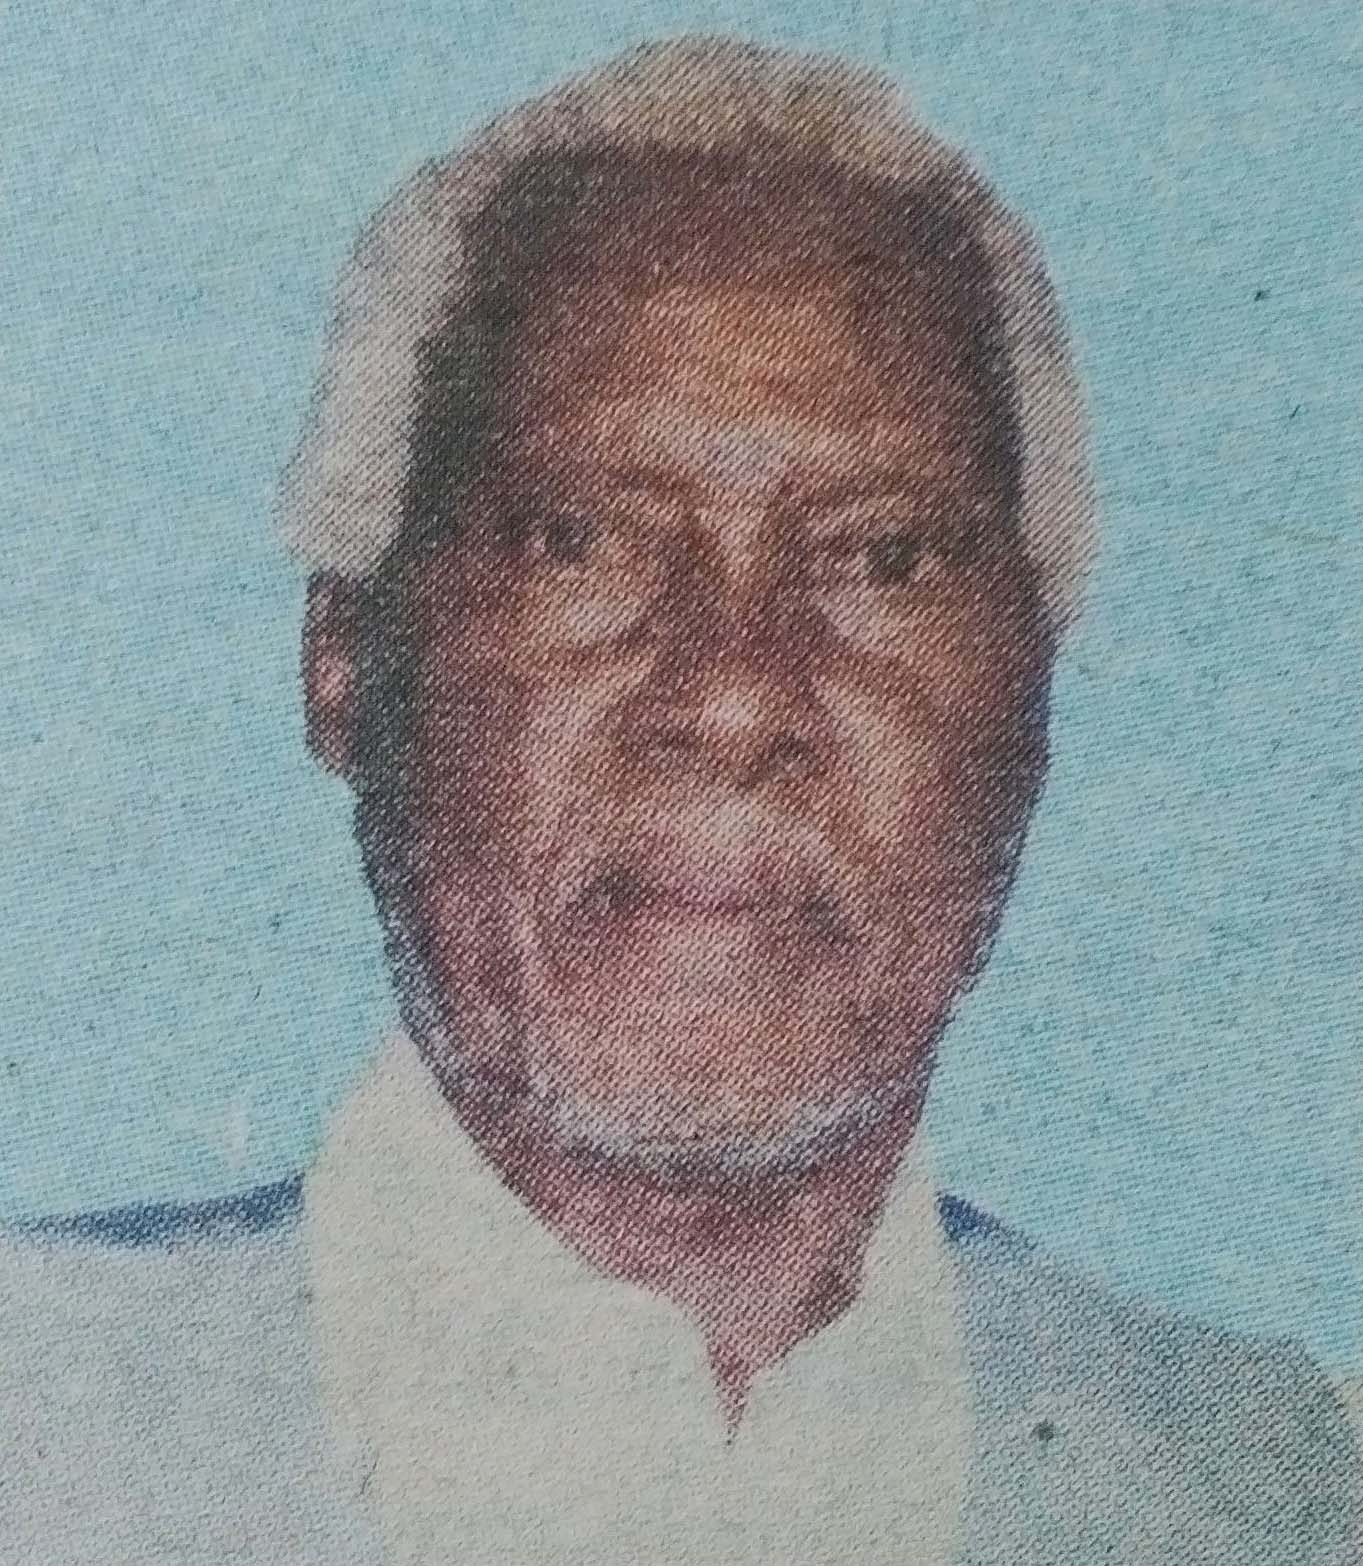 Obituary Image of John Njoroge i Mube (Ithe wa Mube)